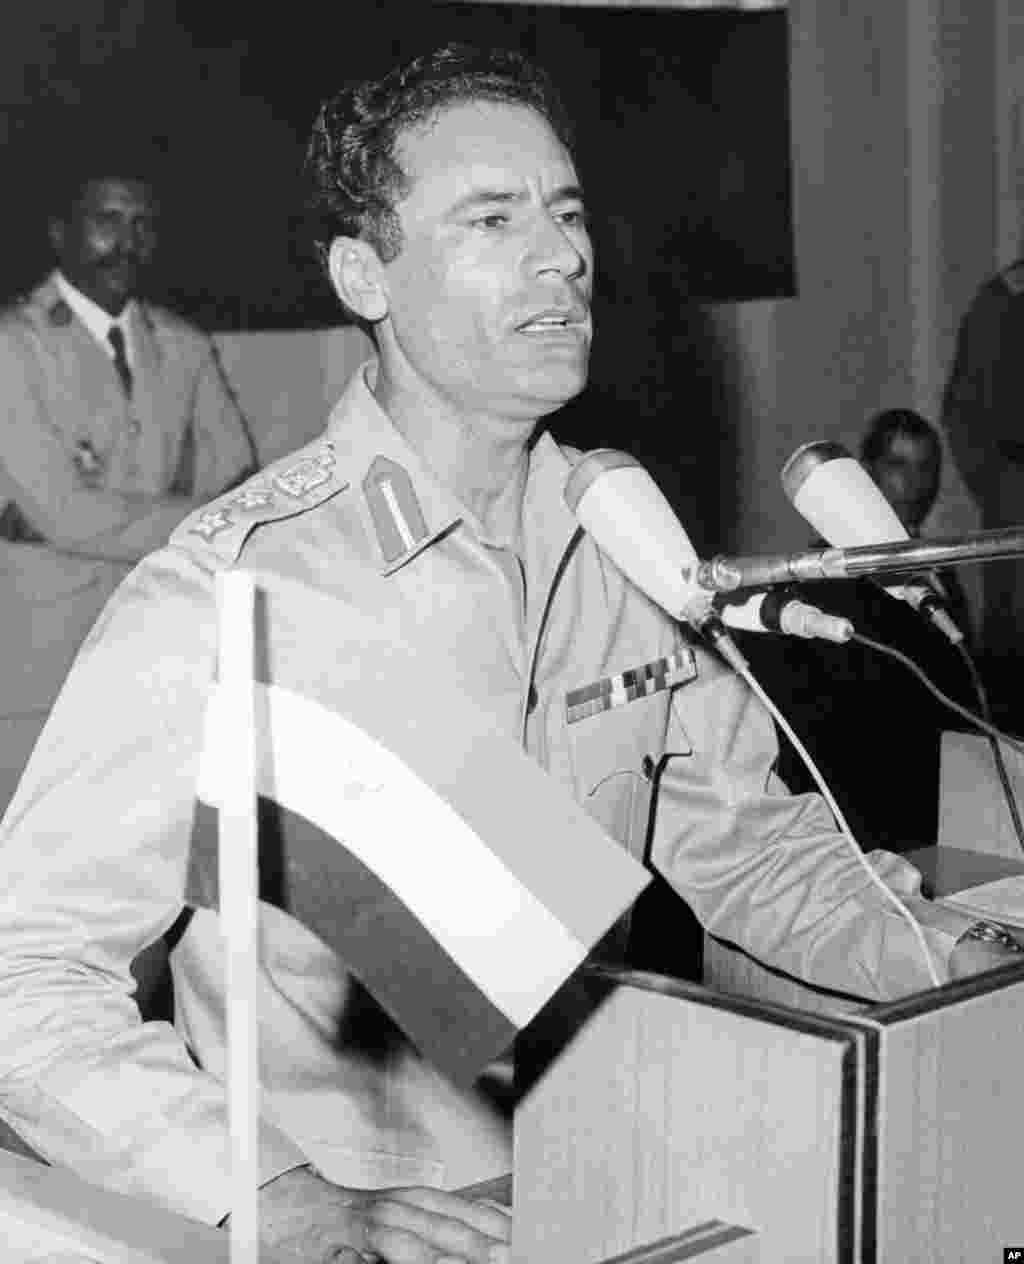 卡扎菲1963年組建被稱作"自由軍官運動"的革命軍官組織。該組織於1969年9月1日推翻了利比亞國王伊德國里斯一世(Idris)，並以"自由、社會主義和團結的"名義﹐宣佈成立了"大阿拉伯利比亞人民社會主義民眾國"。(法新社)